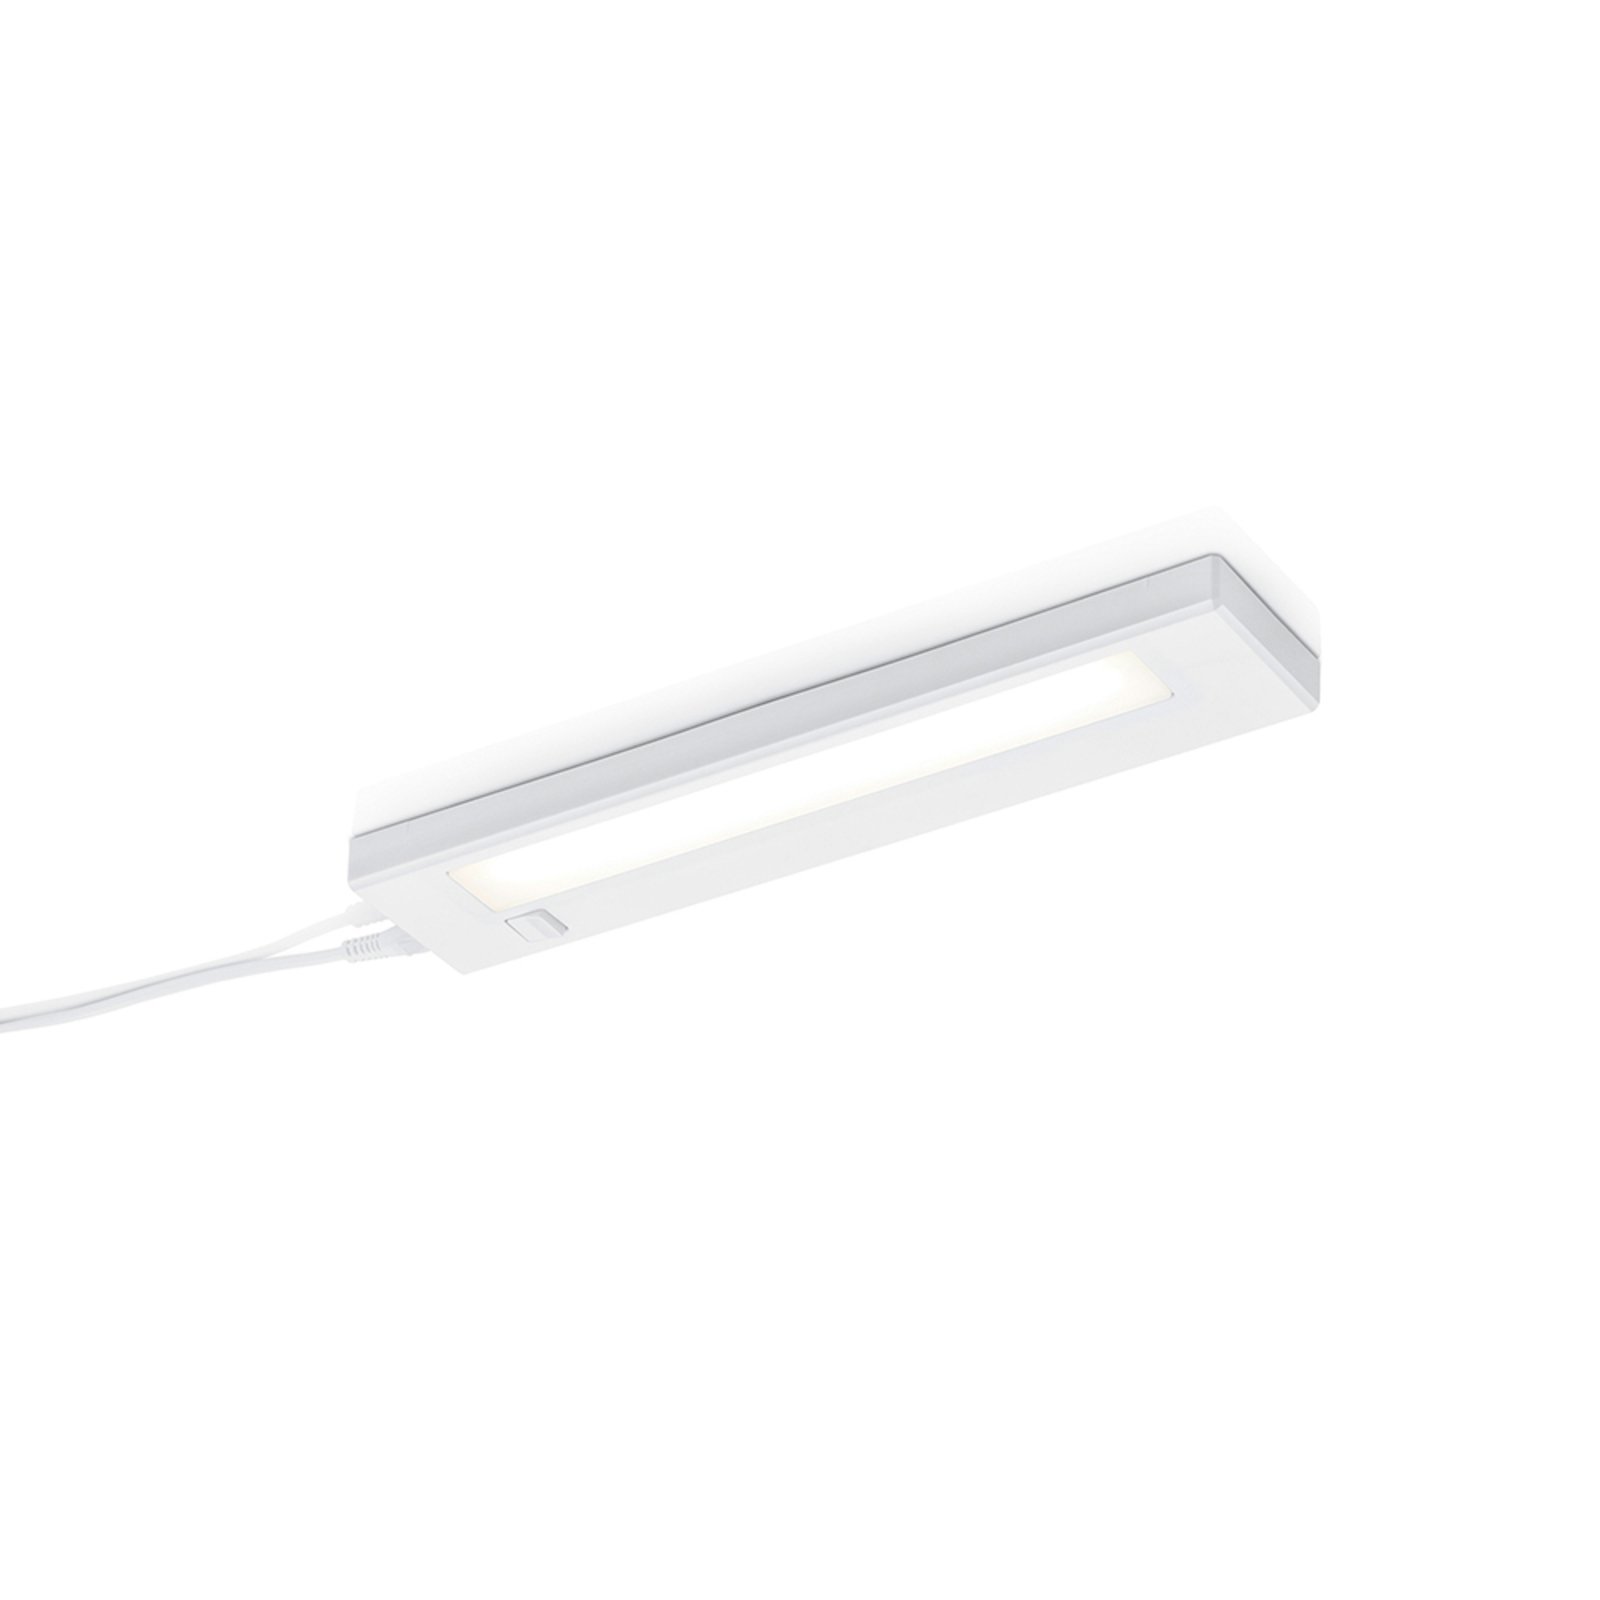 Alino LED rasvjeta ispod ormarića, bijela, dužina 34 cm